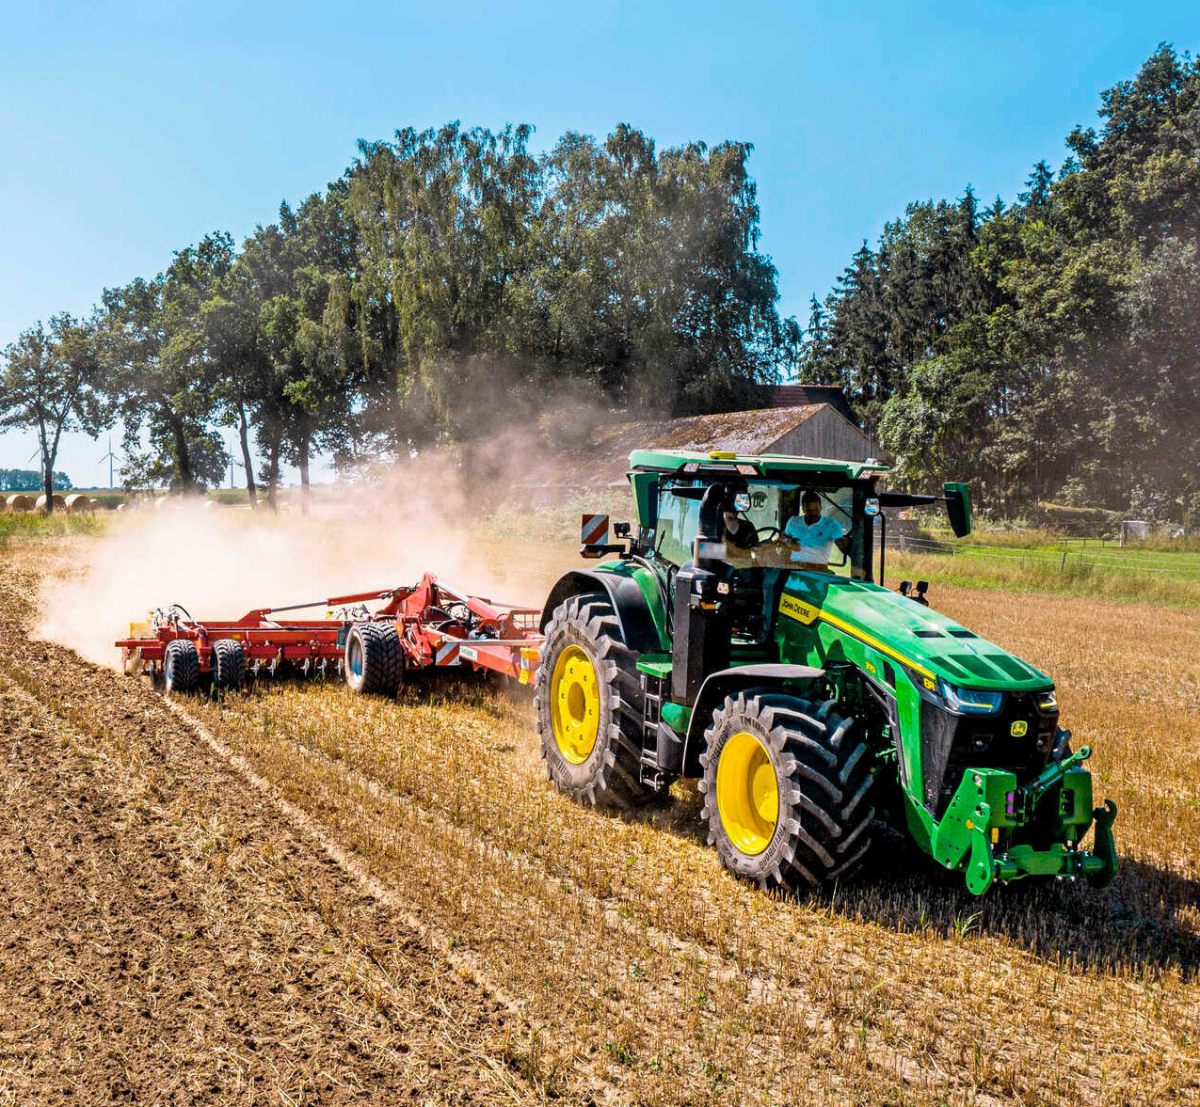 Zalvē kadam lauksaimniekam no diviem traktoriem nozagti tehniskā aprīkojuma elementi 14 000 eiro vērtībā